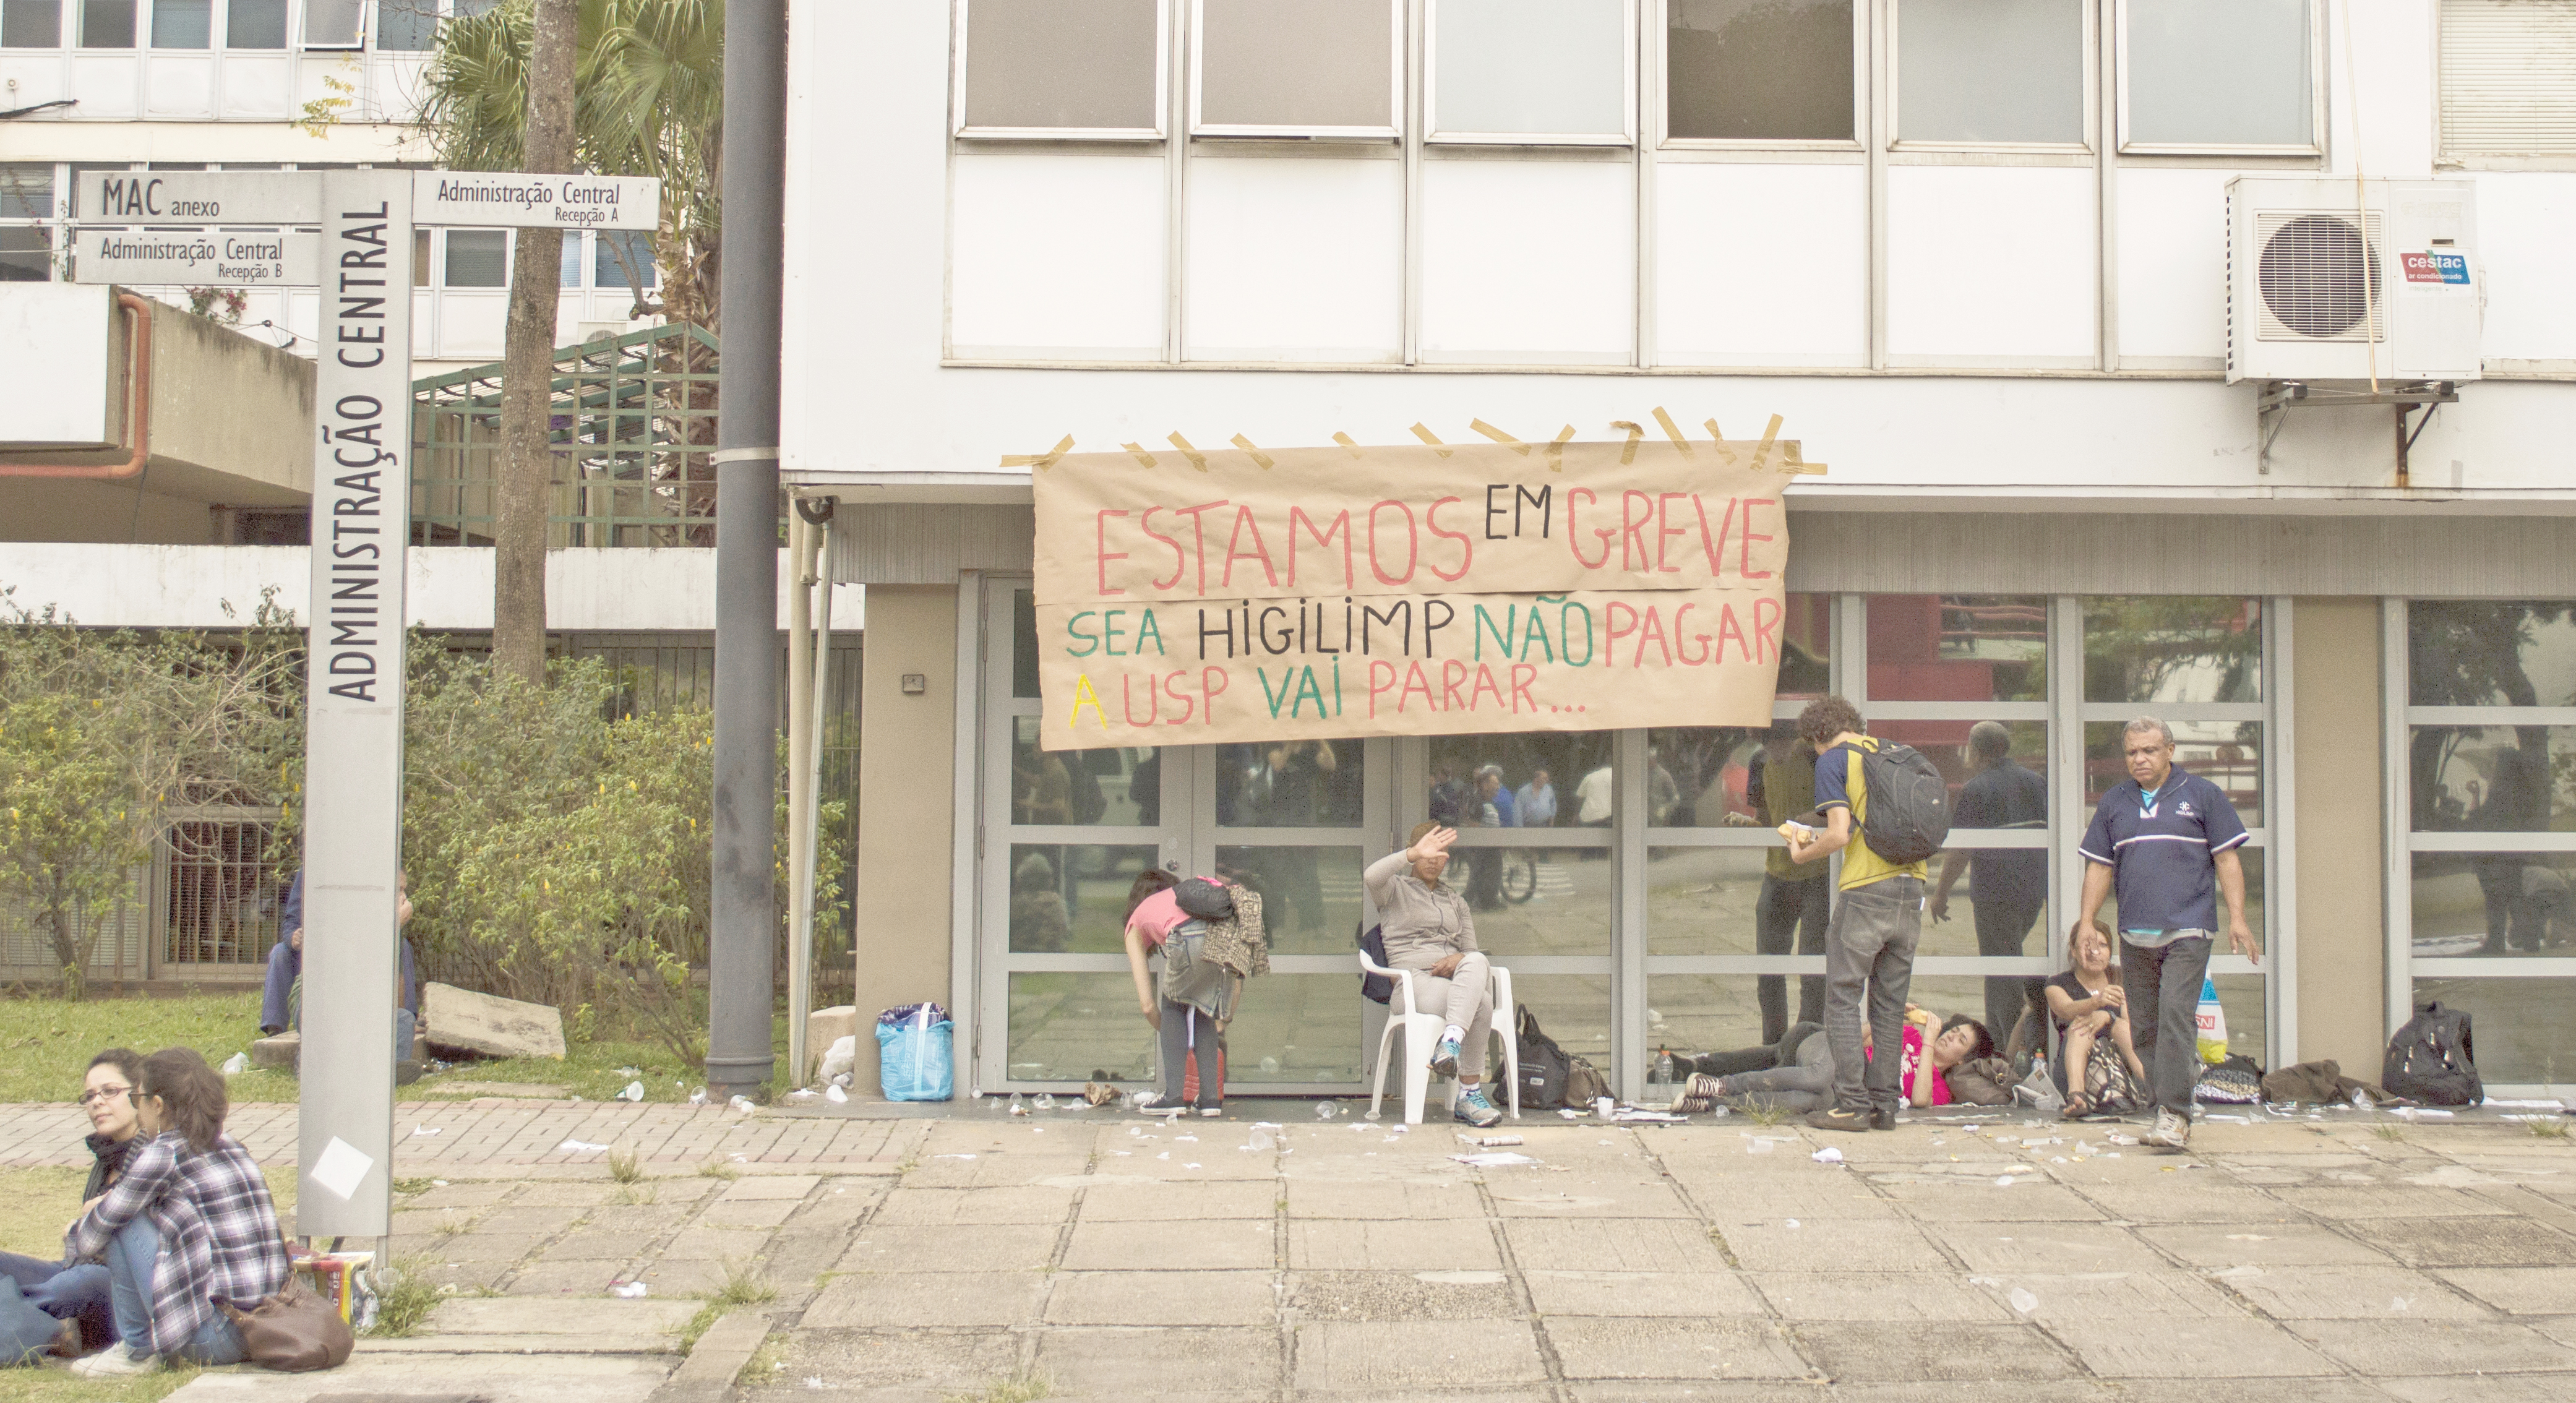 Sem pagamentos regularizados, terceirizados prometem continuar em greve (Foto: Bruna Romão)